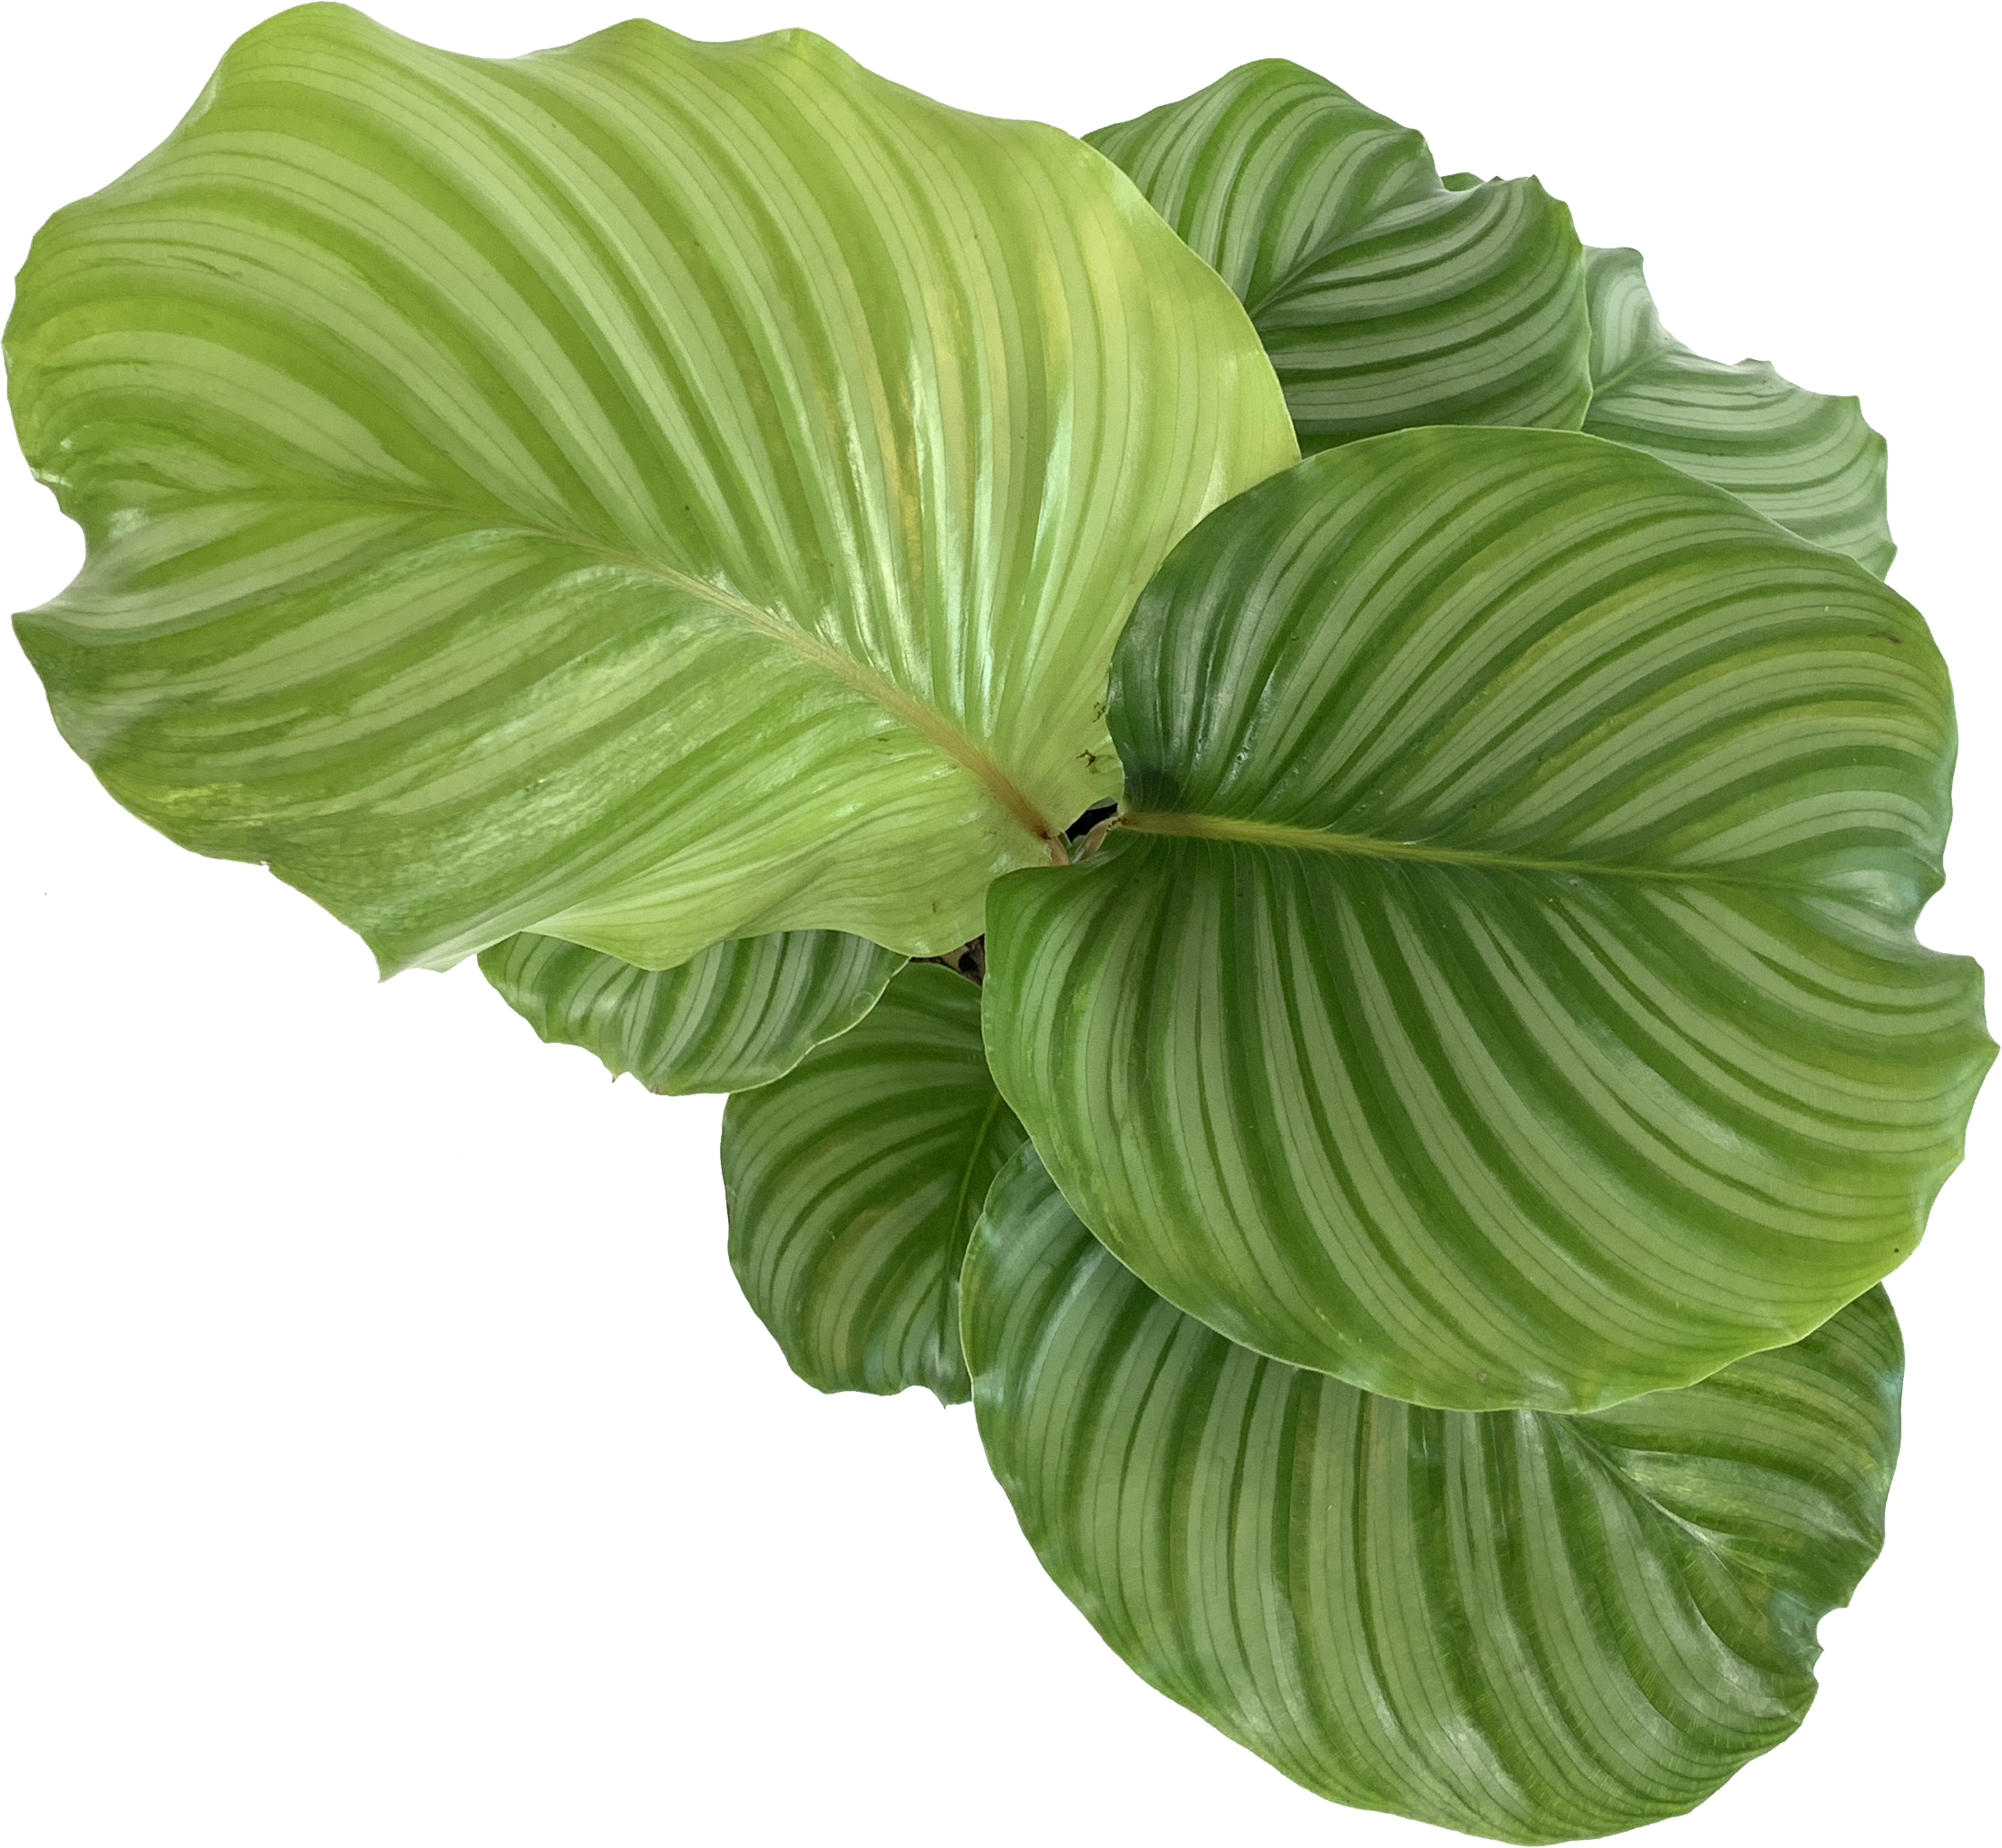 Calathea orbifolia - Goeppertia orbifolia